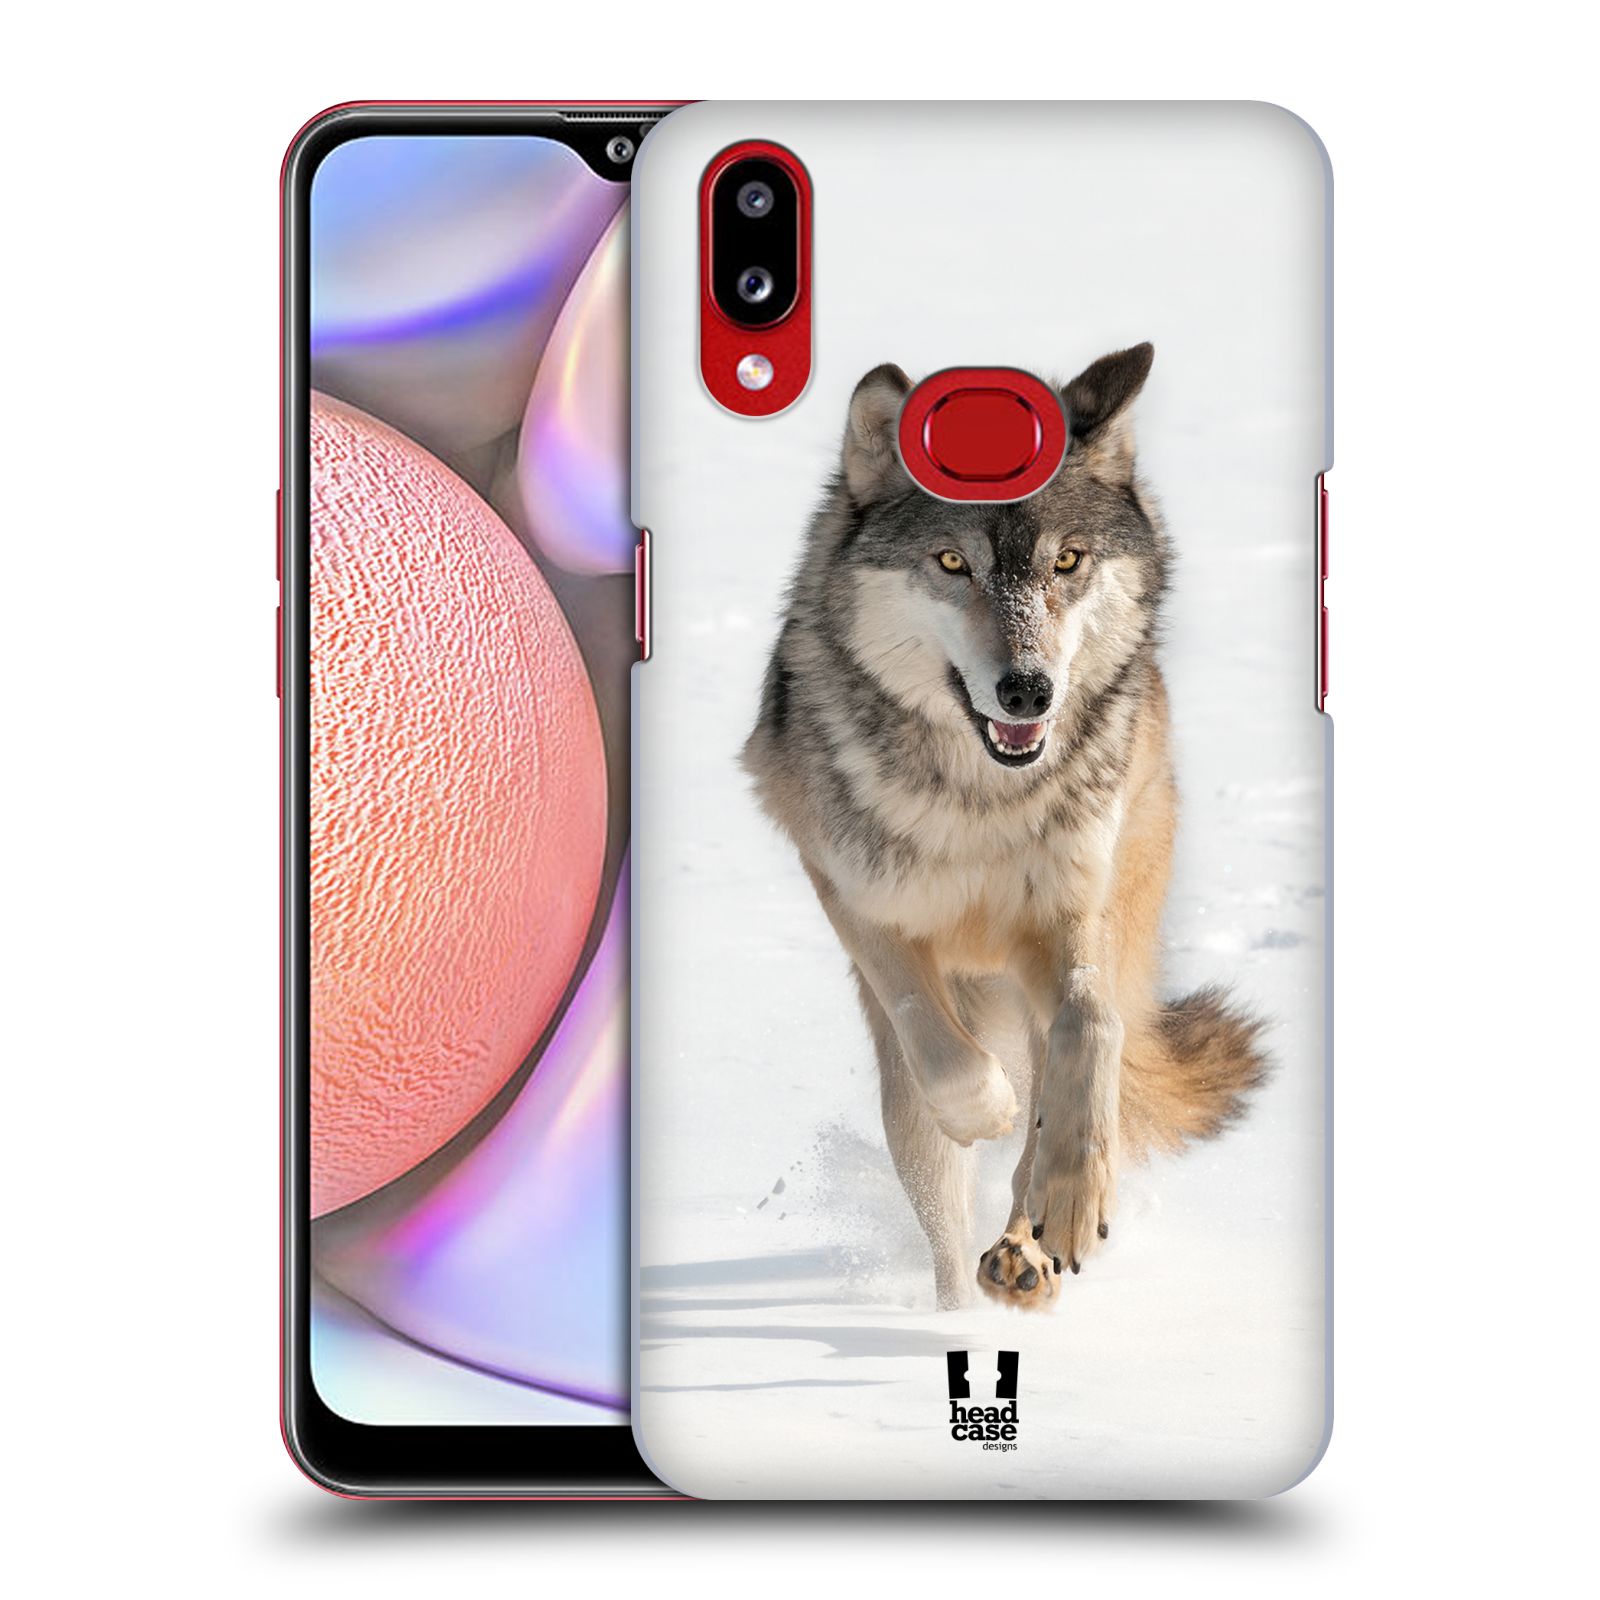 Zadní obal pro mobil Samsung Galaxy A10s - HEAD CASE - Svět zvířat divoký vlk